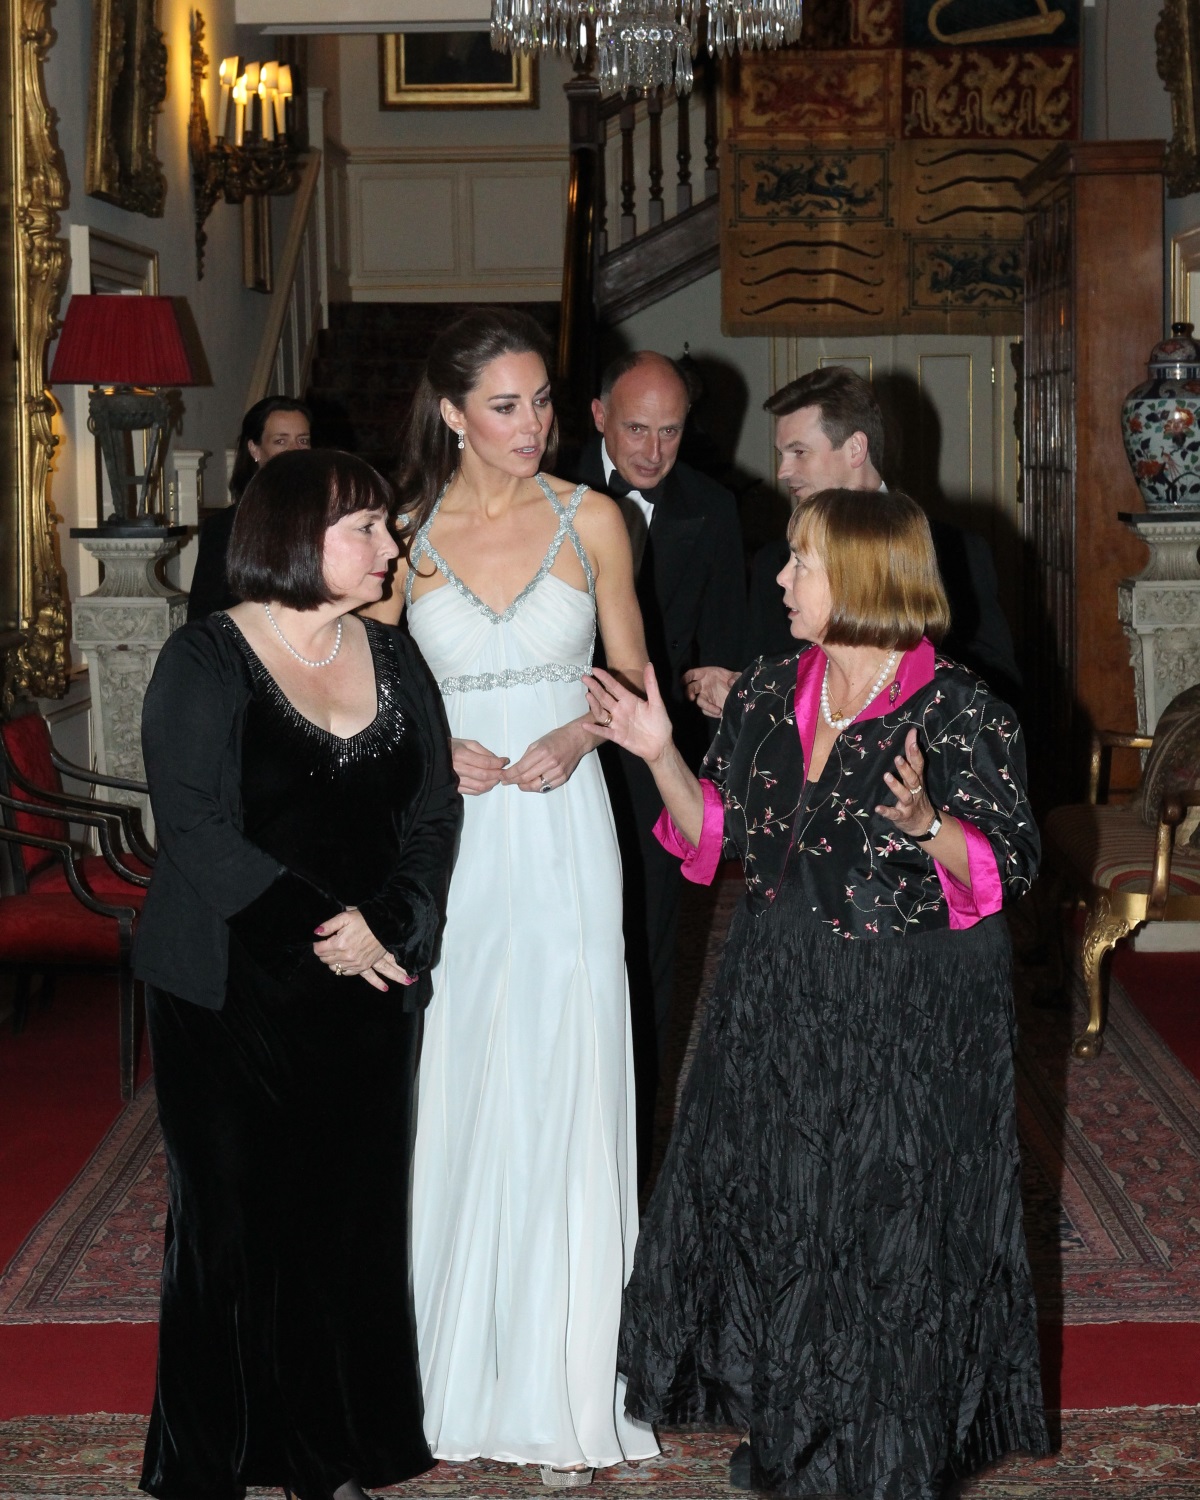 За първи път, откакто стана херцогиня на Съсекс, Меган Маркъл се появи на официално събитие сама. Херцогинята присъства на откриването на изложба в Кралската академия по изкуствата в Лондон. На нея бяха представени произведения на изкуството от Австралия, Нова Зеландия, Фиджи и Тонга. За повода херцогинята избра елегантна черна рокля на "Живанши" в комбинация с високи обувки и малка чантичка.